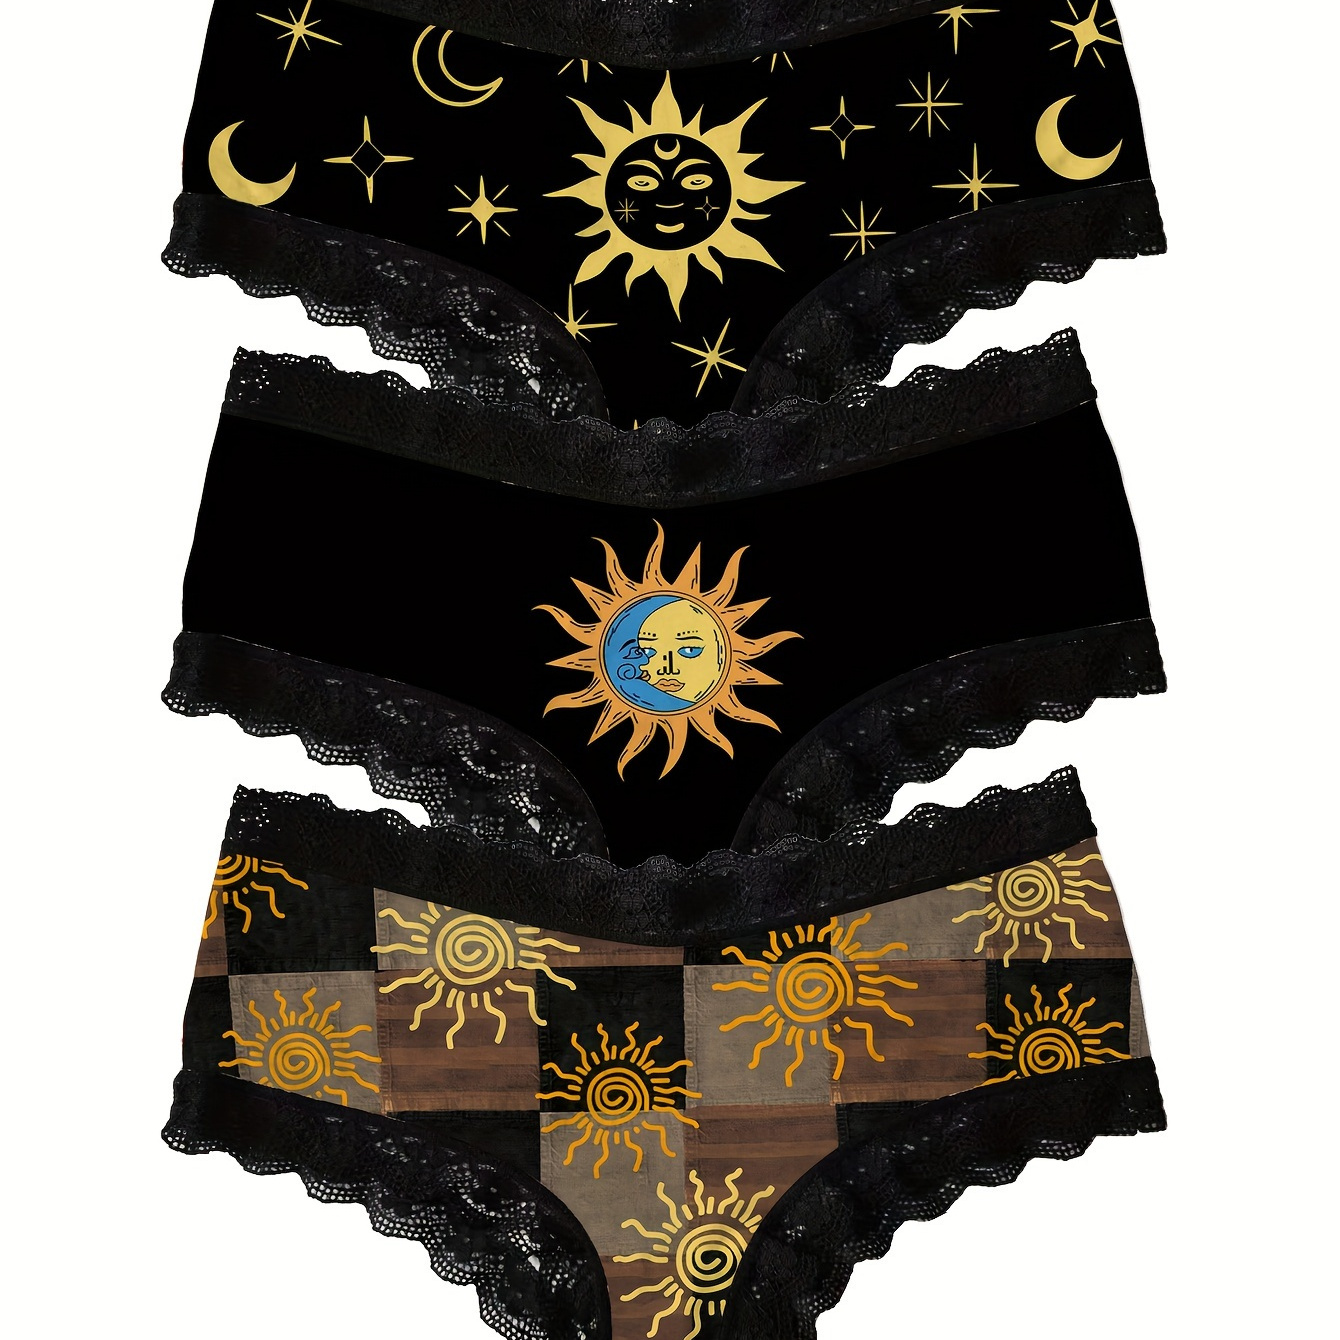 

3pcs Sun Print Lace Trim Briefs, Comfy Breathable Stretchy Intimates Panties, Women's Lingerie & Underwear